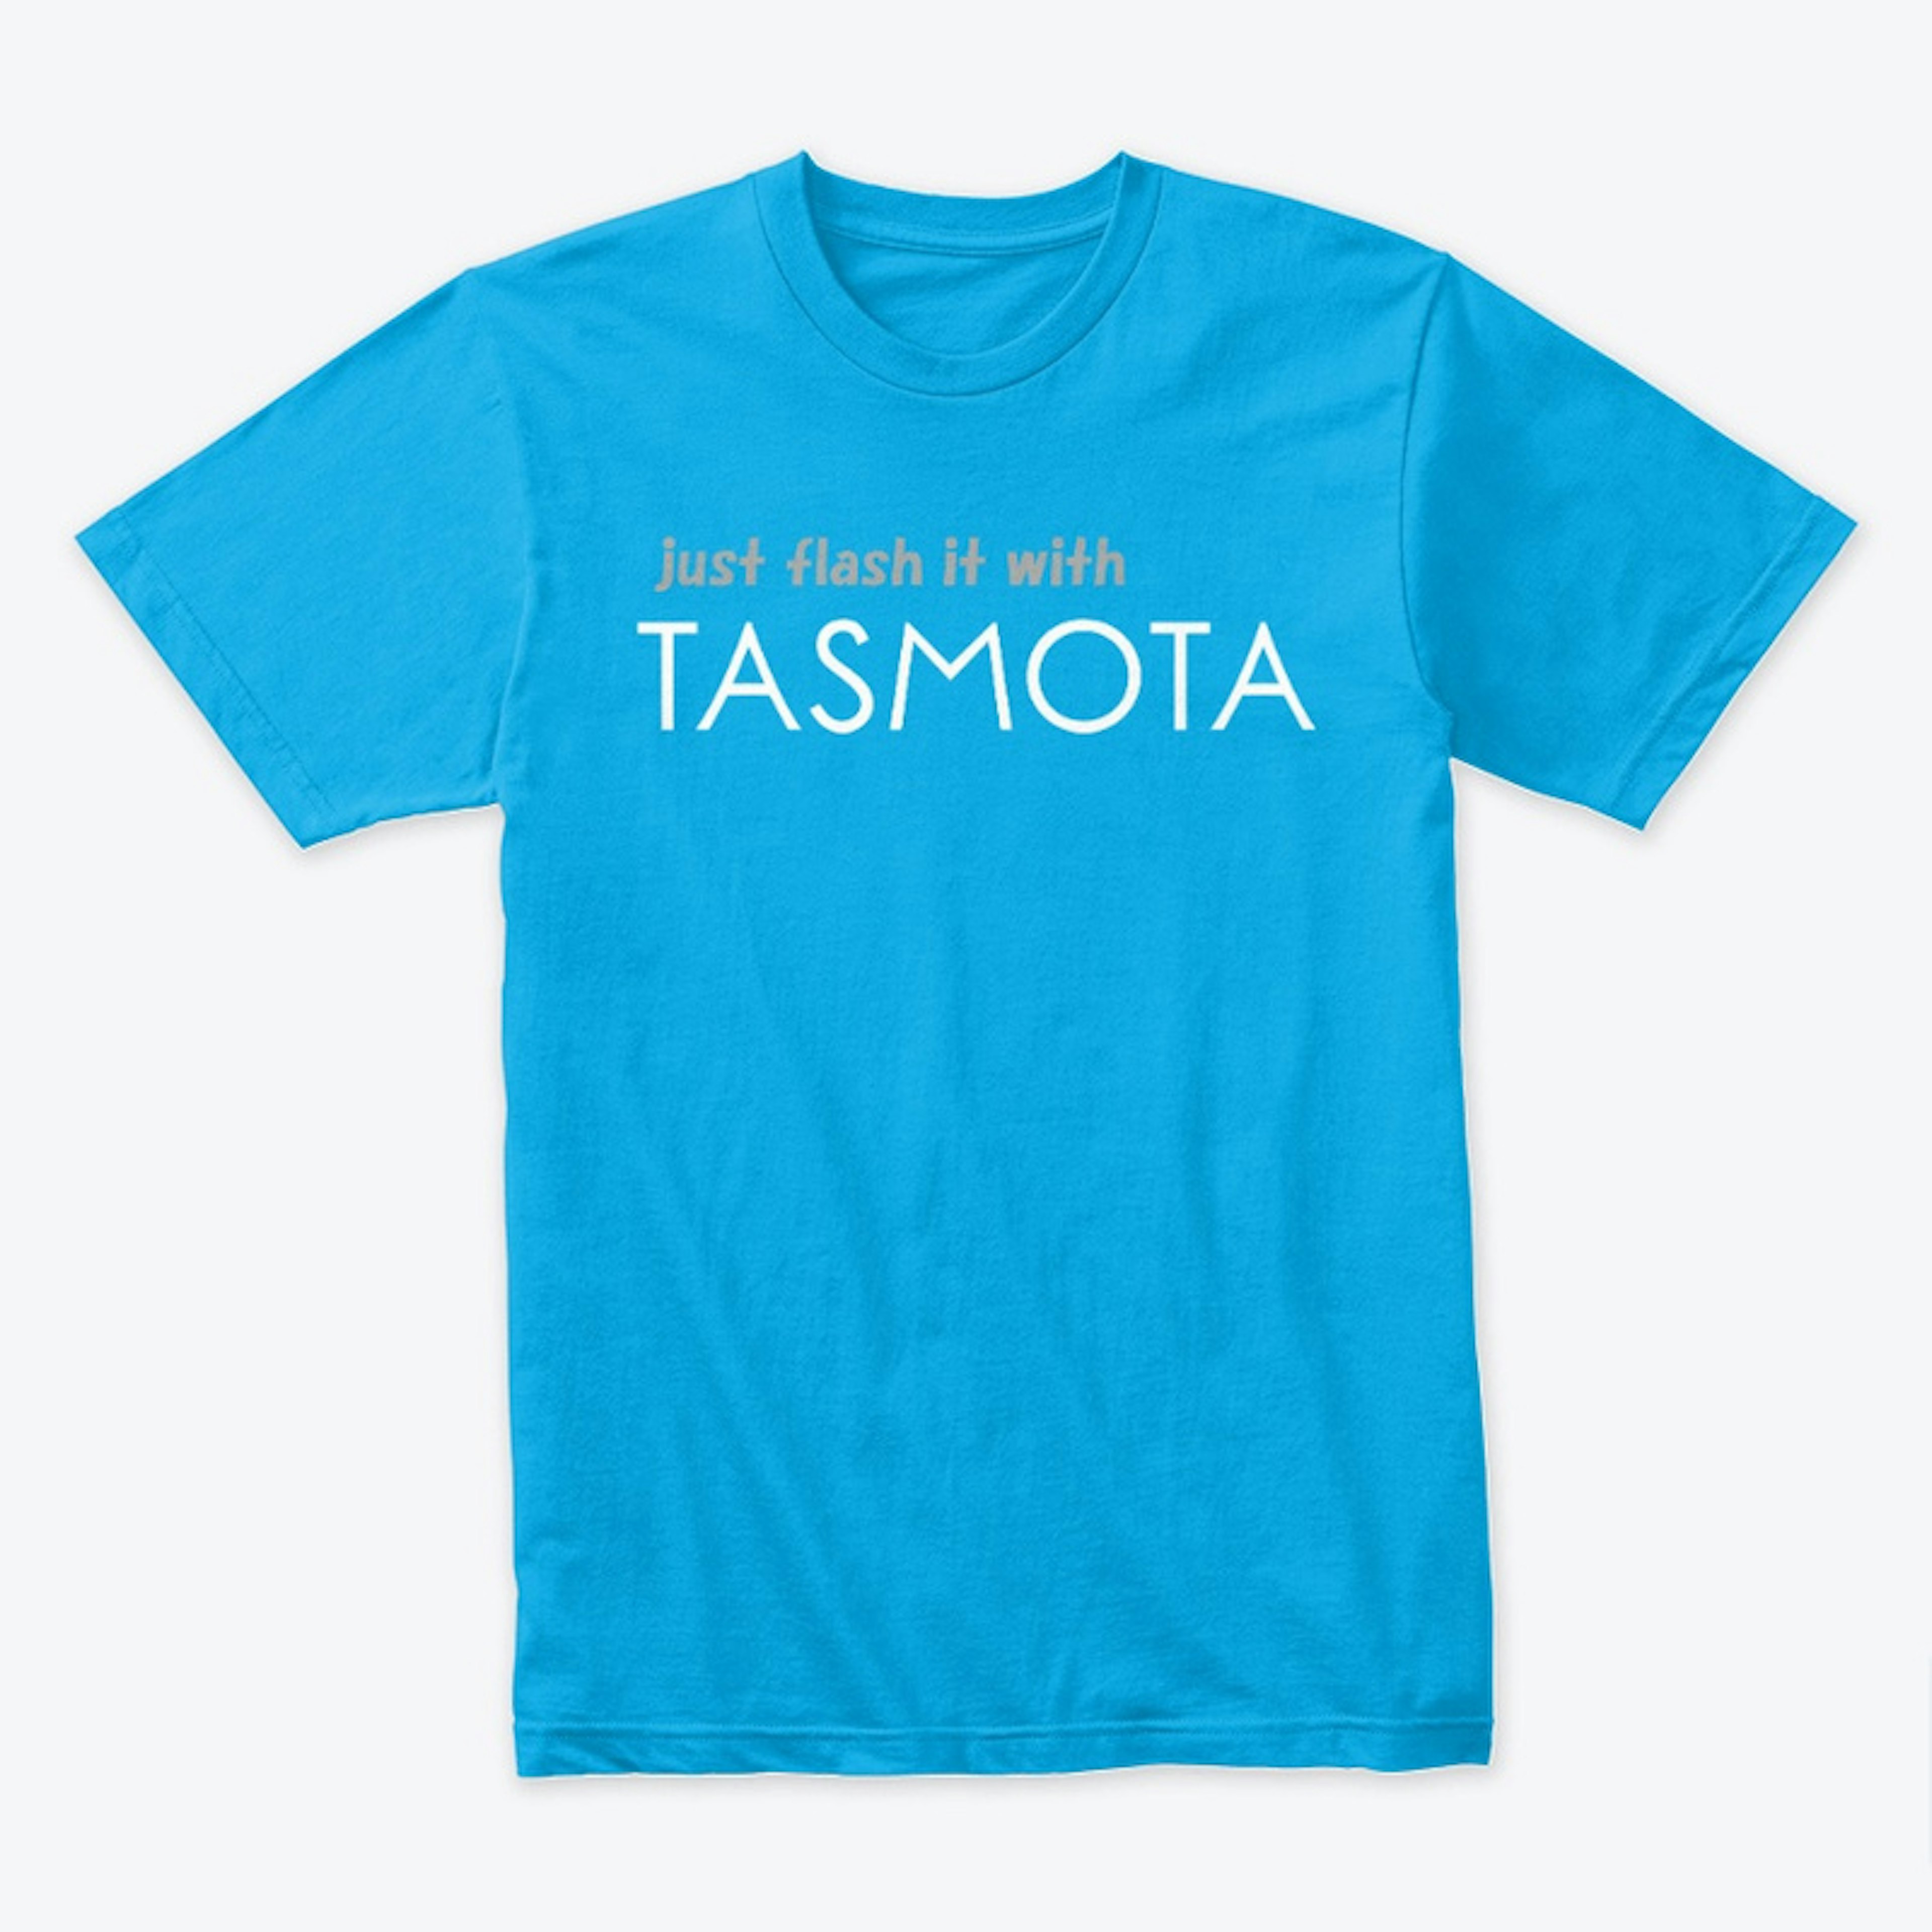 Just flash it with Tasmota